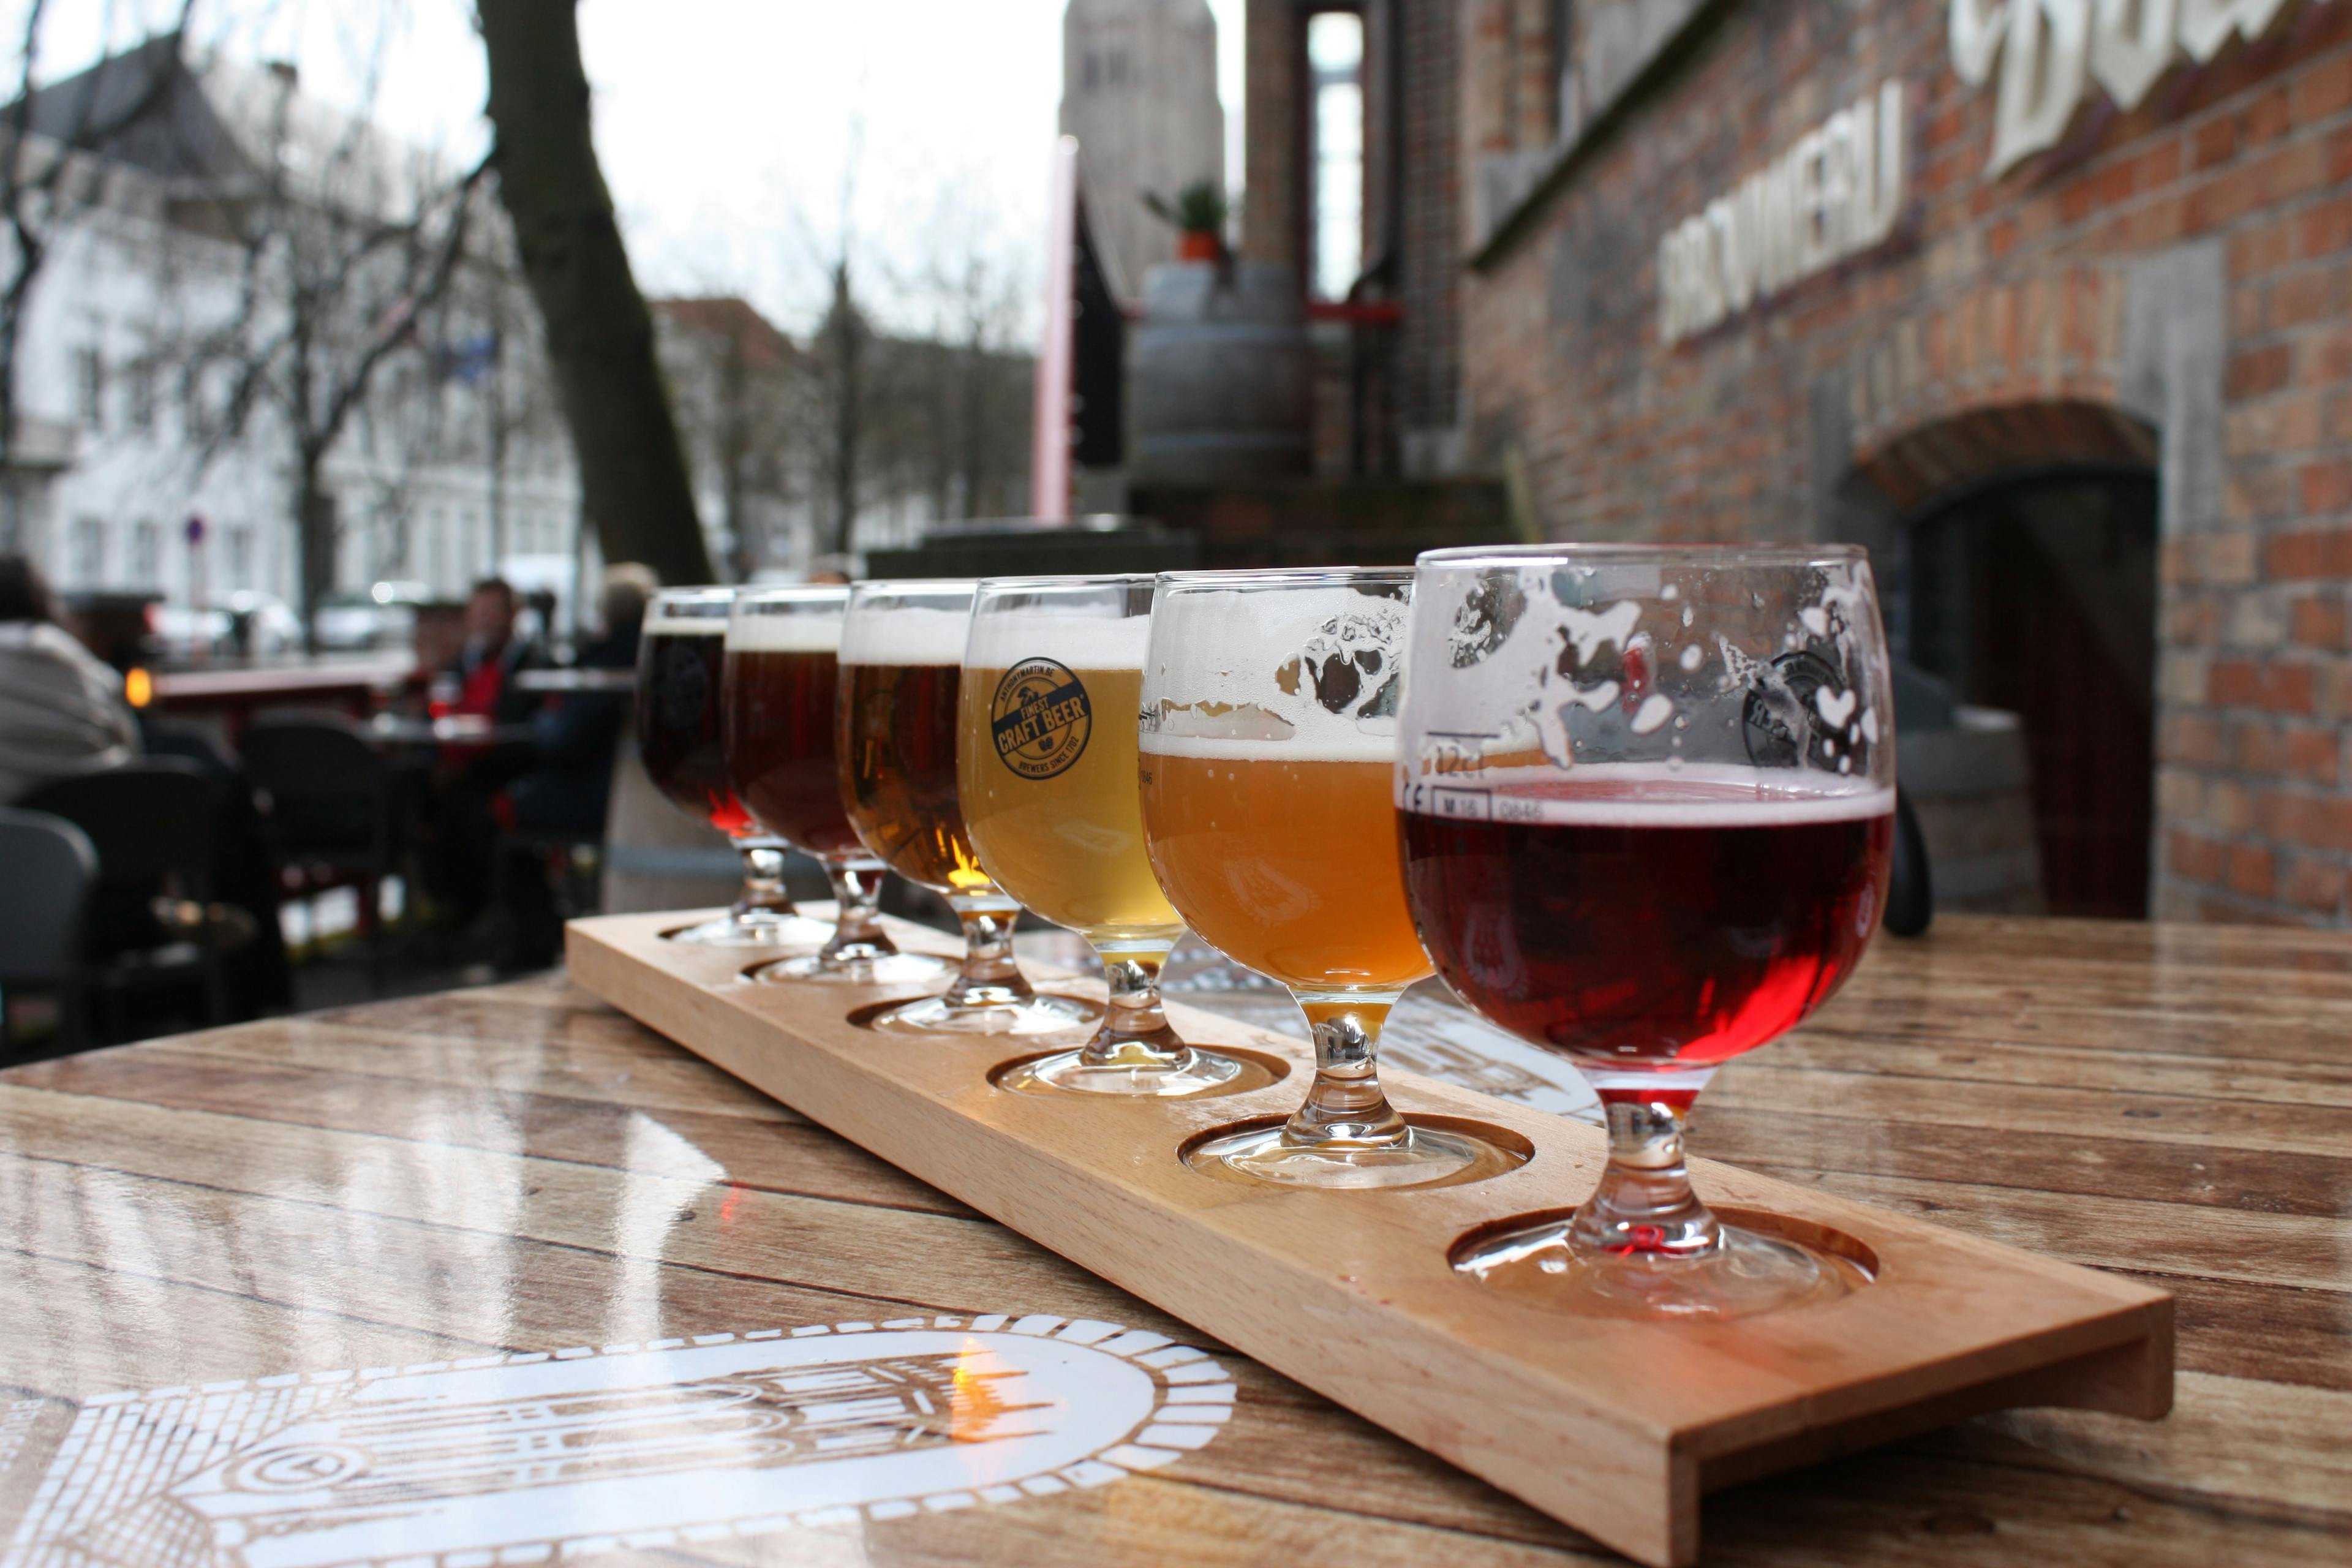 Dégustation de bières belges artisanales, comme les Duvel, sur une table, illustrant l'expérience culinaire unique offerte par Pop'in.